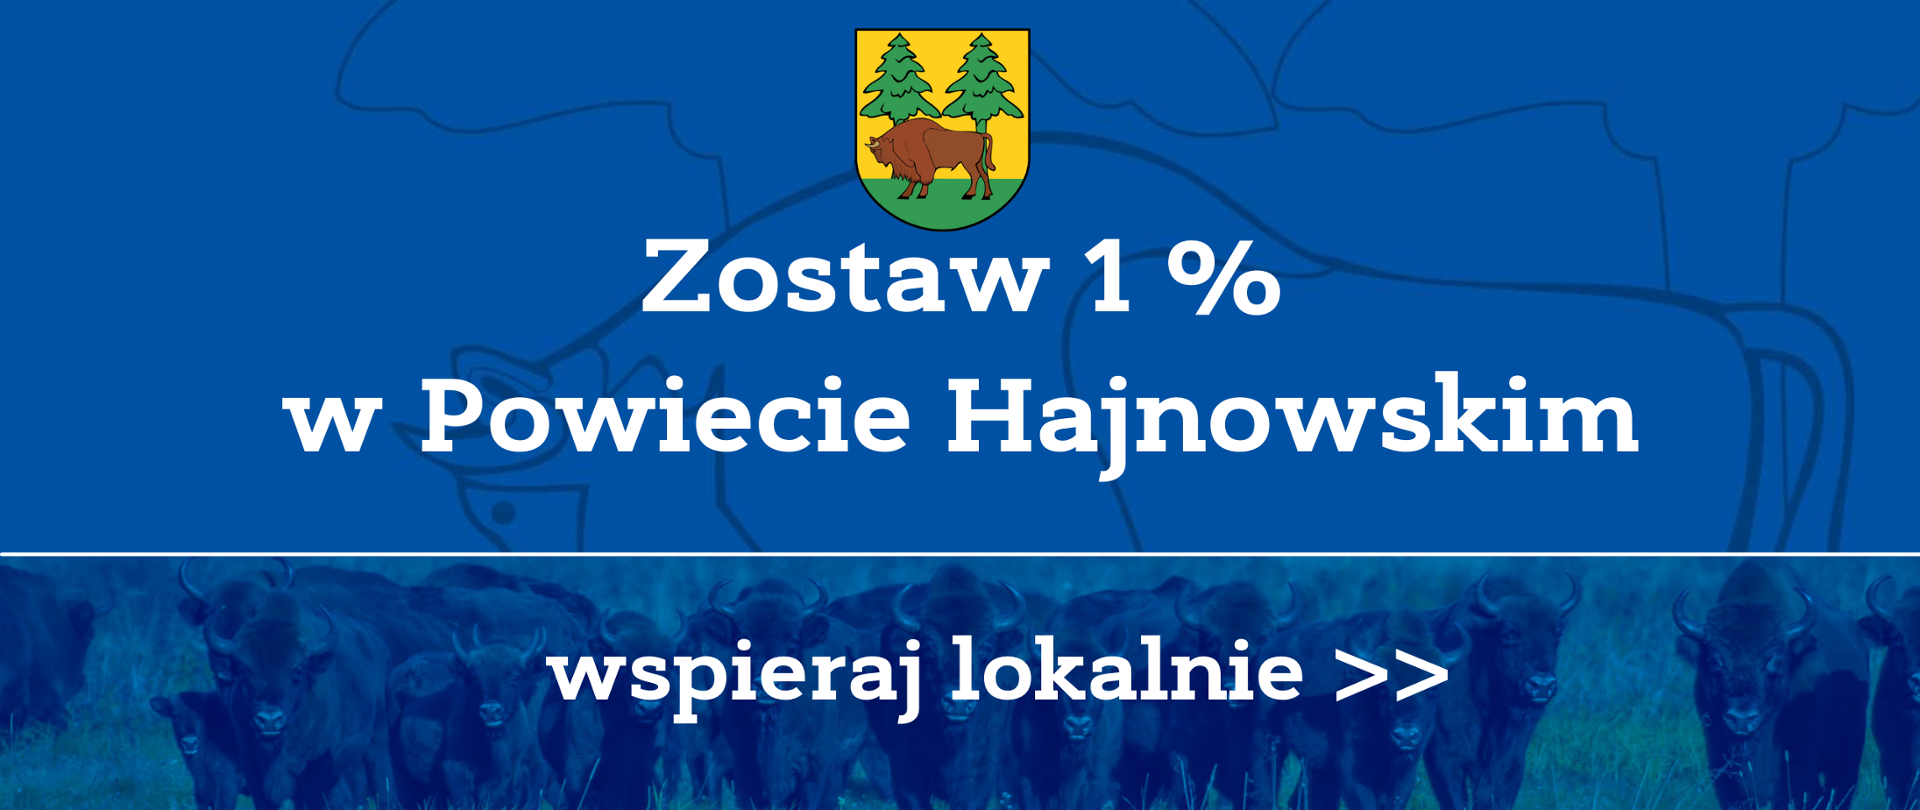 Zostaw 1% w Powiecie Hajnowskim, wspieraj lokalnie.